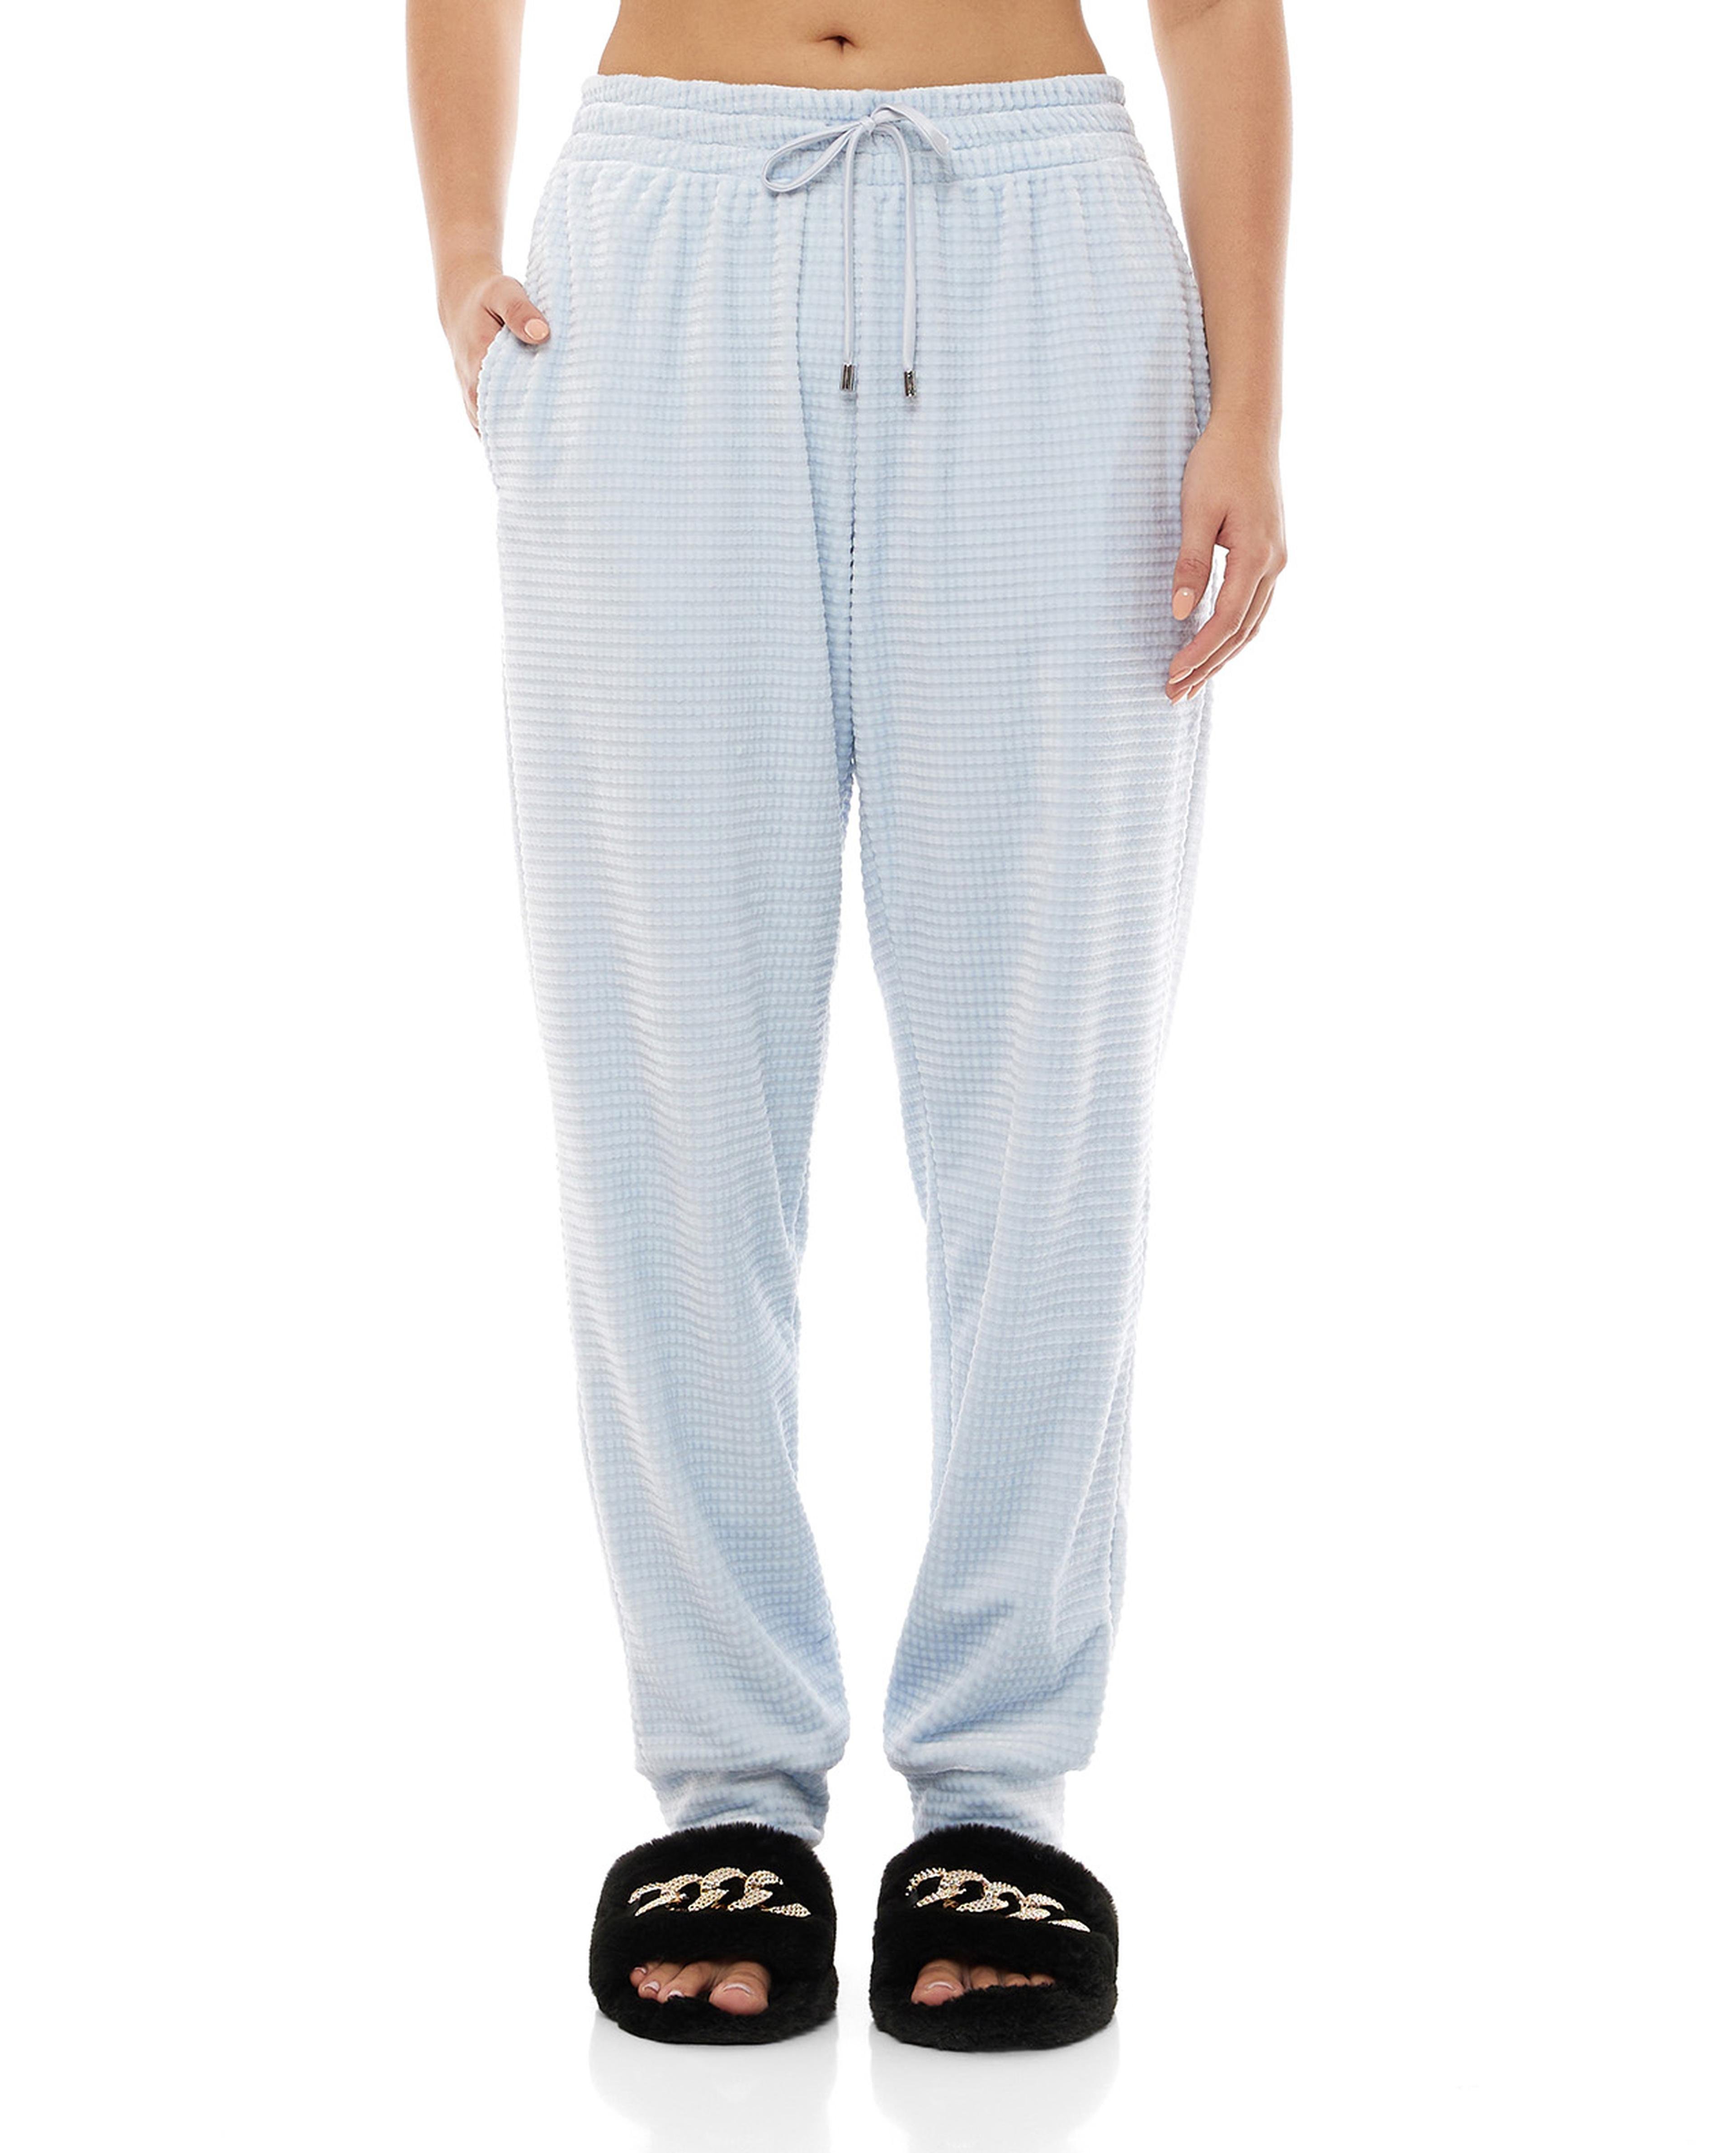 Plush Pajama Bottoms with Drawstring Waist